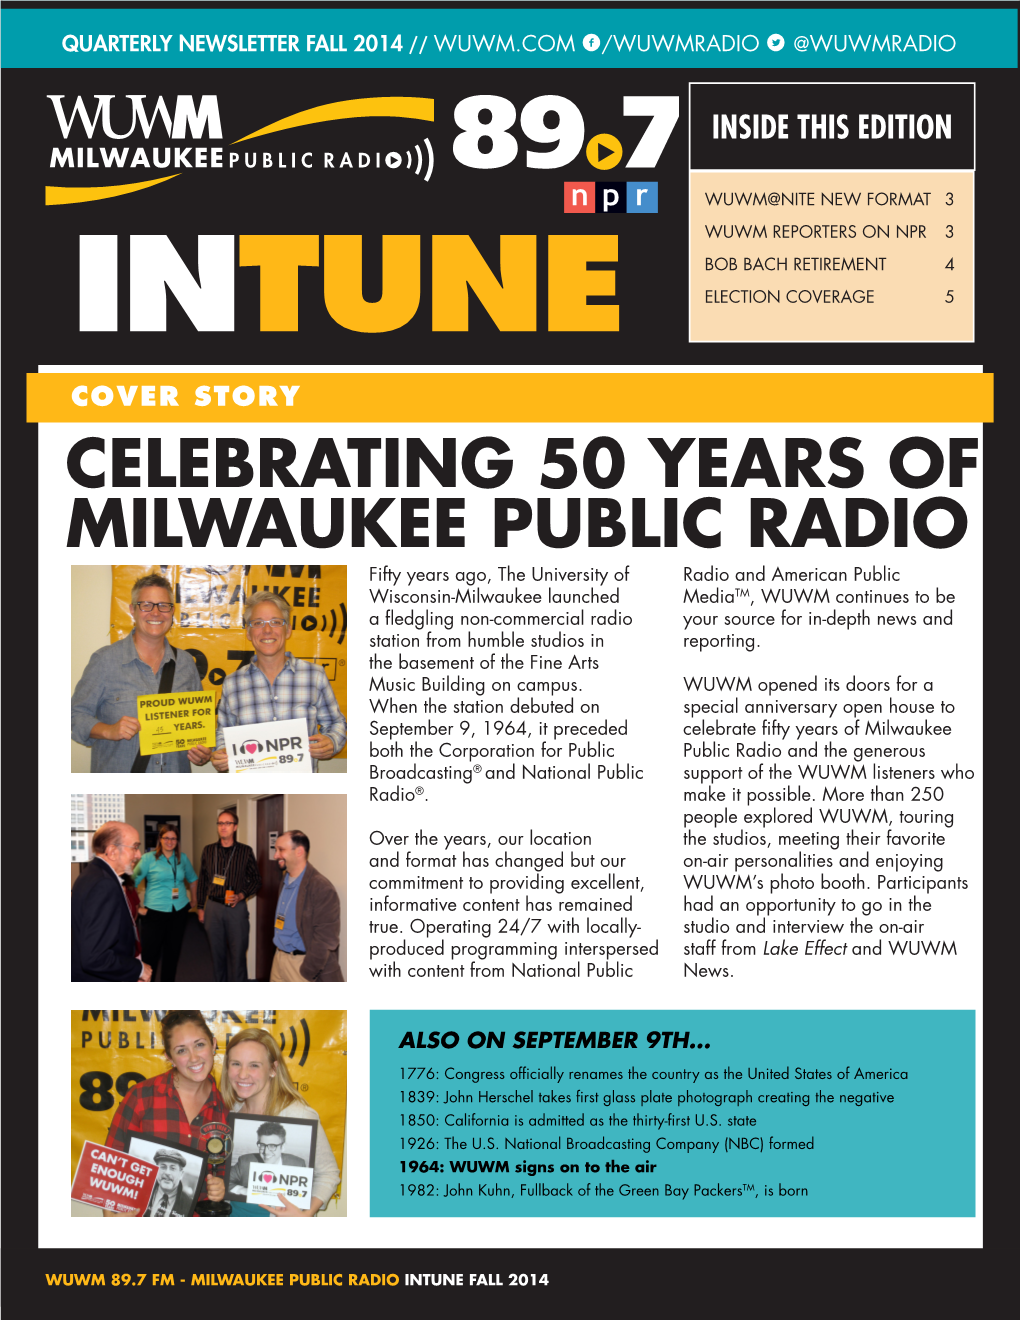 Celebrating 50 Years of Milwaukee Public Radio